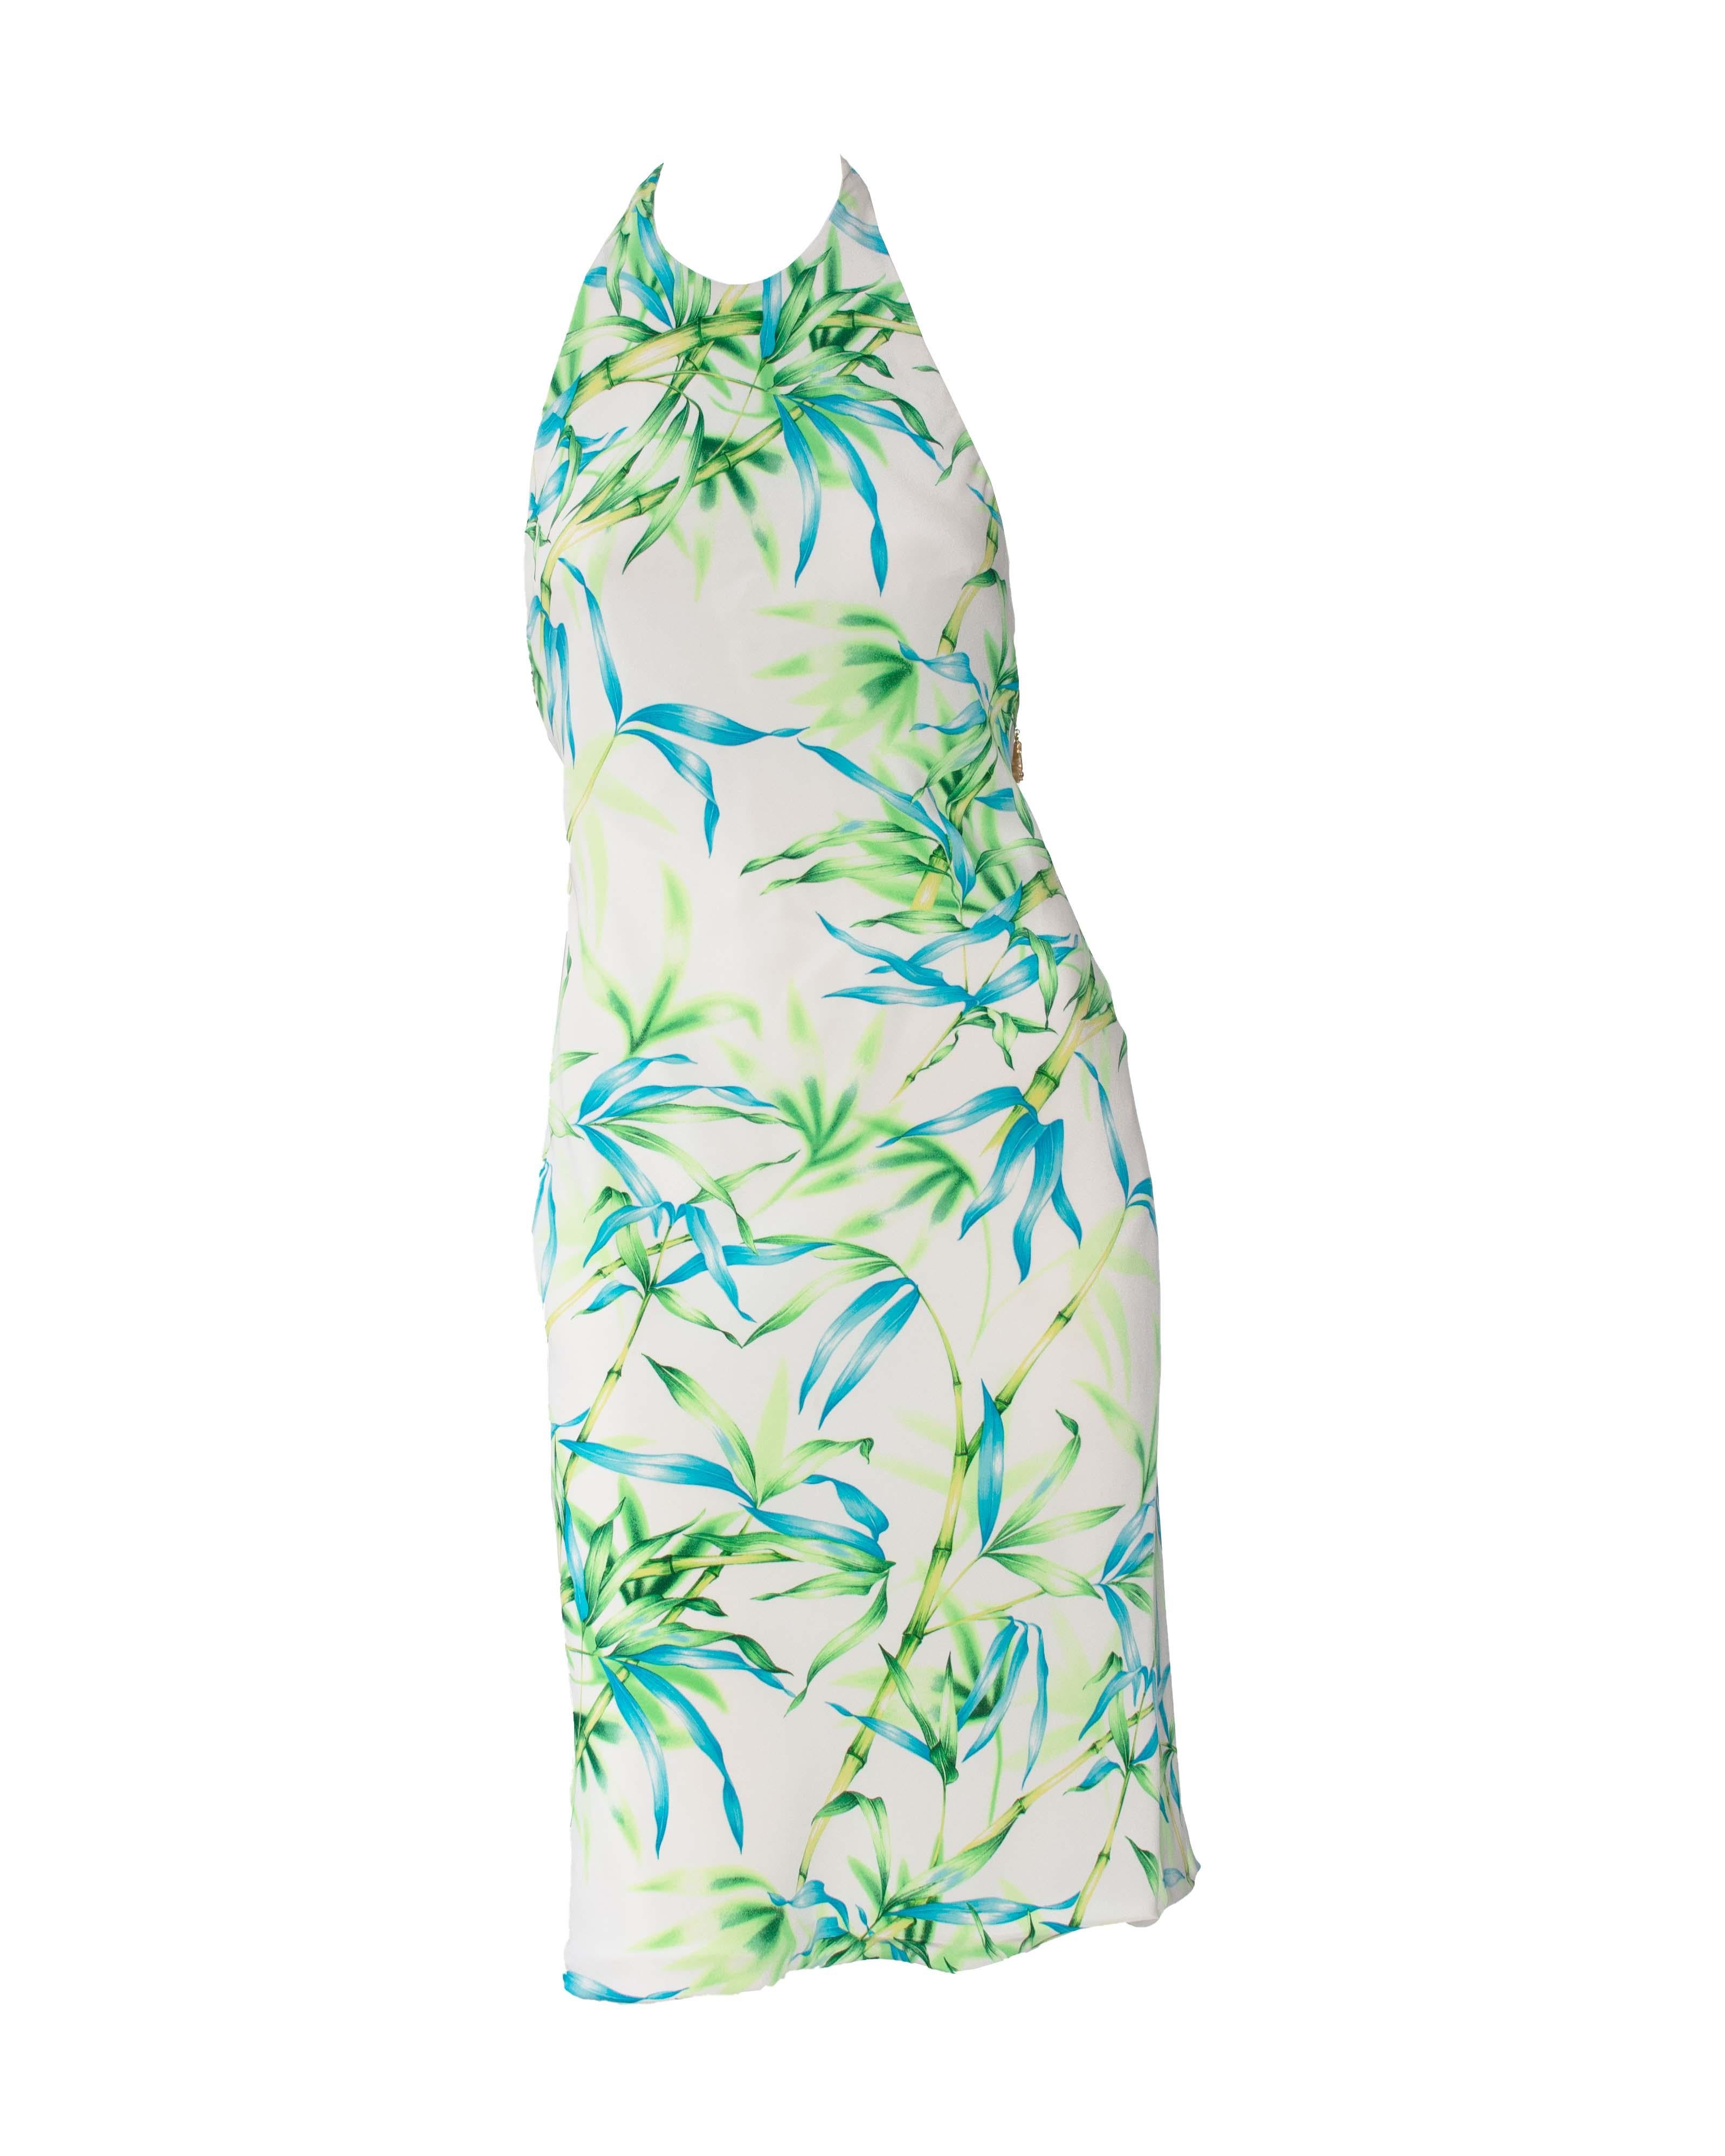 Wir präsentieren ein ikonisches Kleid mit Dschungelprint aus der S/S 2000 Kollektion von Donatella Versace. Dieses atemberaubende Kleid hat das gleiche Muster, aber eine andere Farbkombination als das berüchtigte Dschungelkleid von JLo Versace.